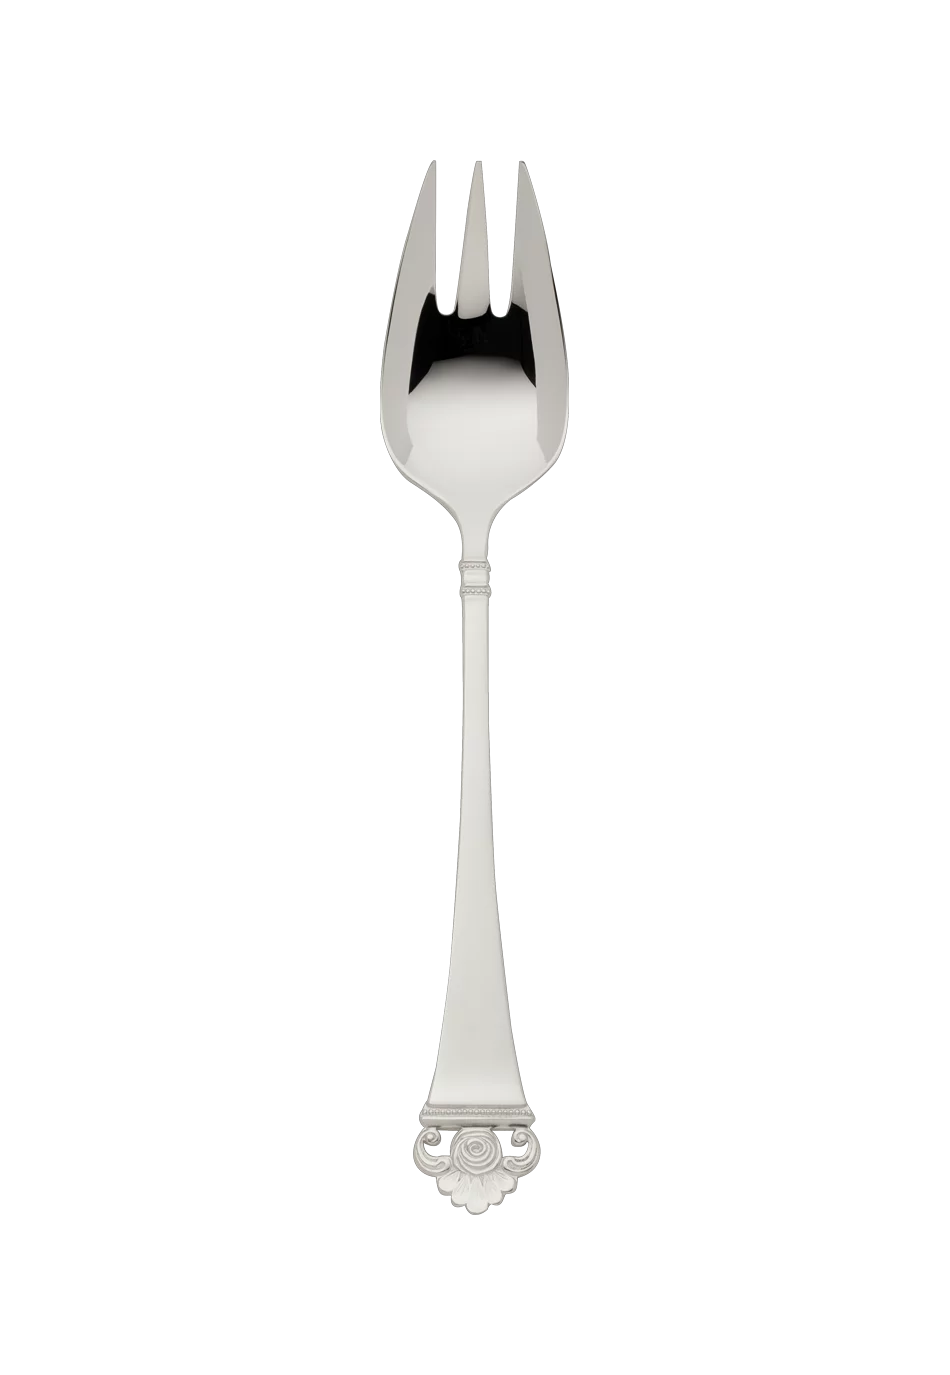 Rosenmuster Vegetable Fork (150g massive silverplated)